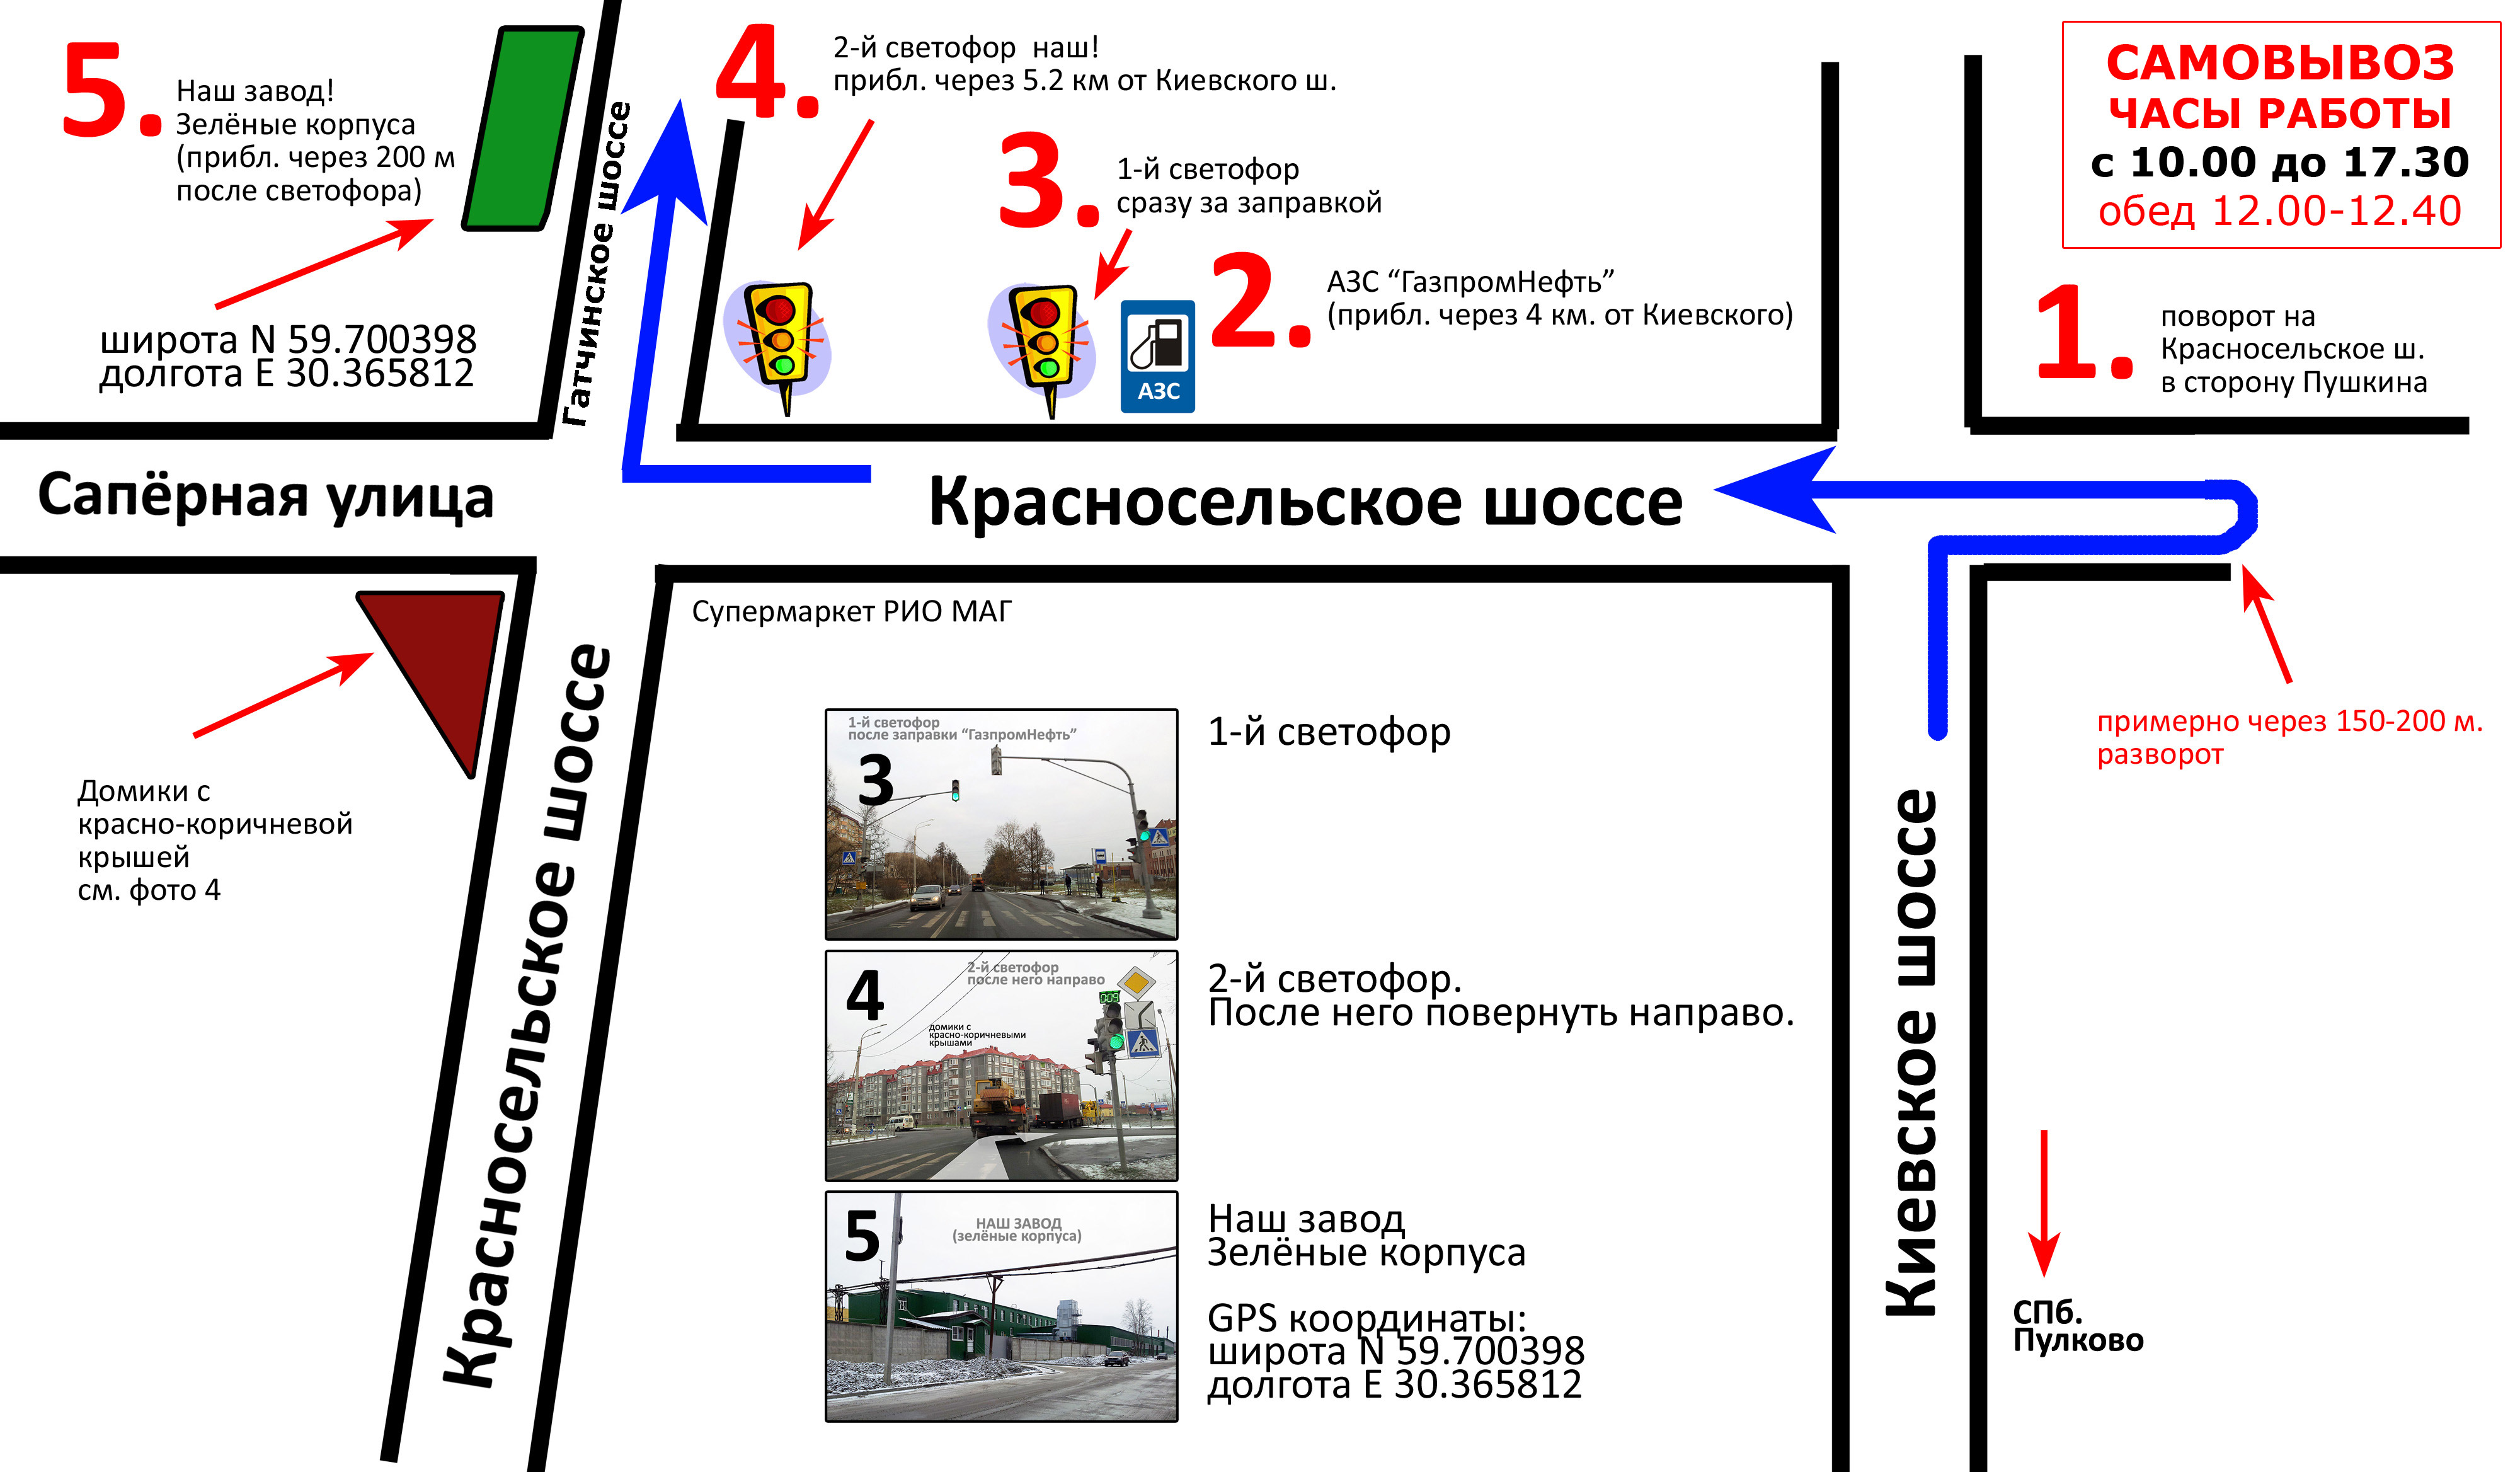 Светофор магазин на карте московской